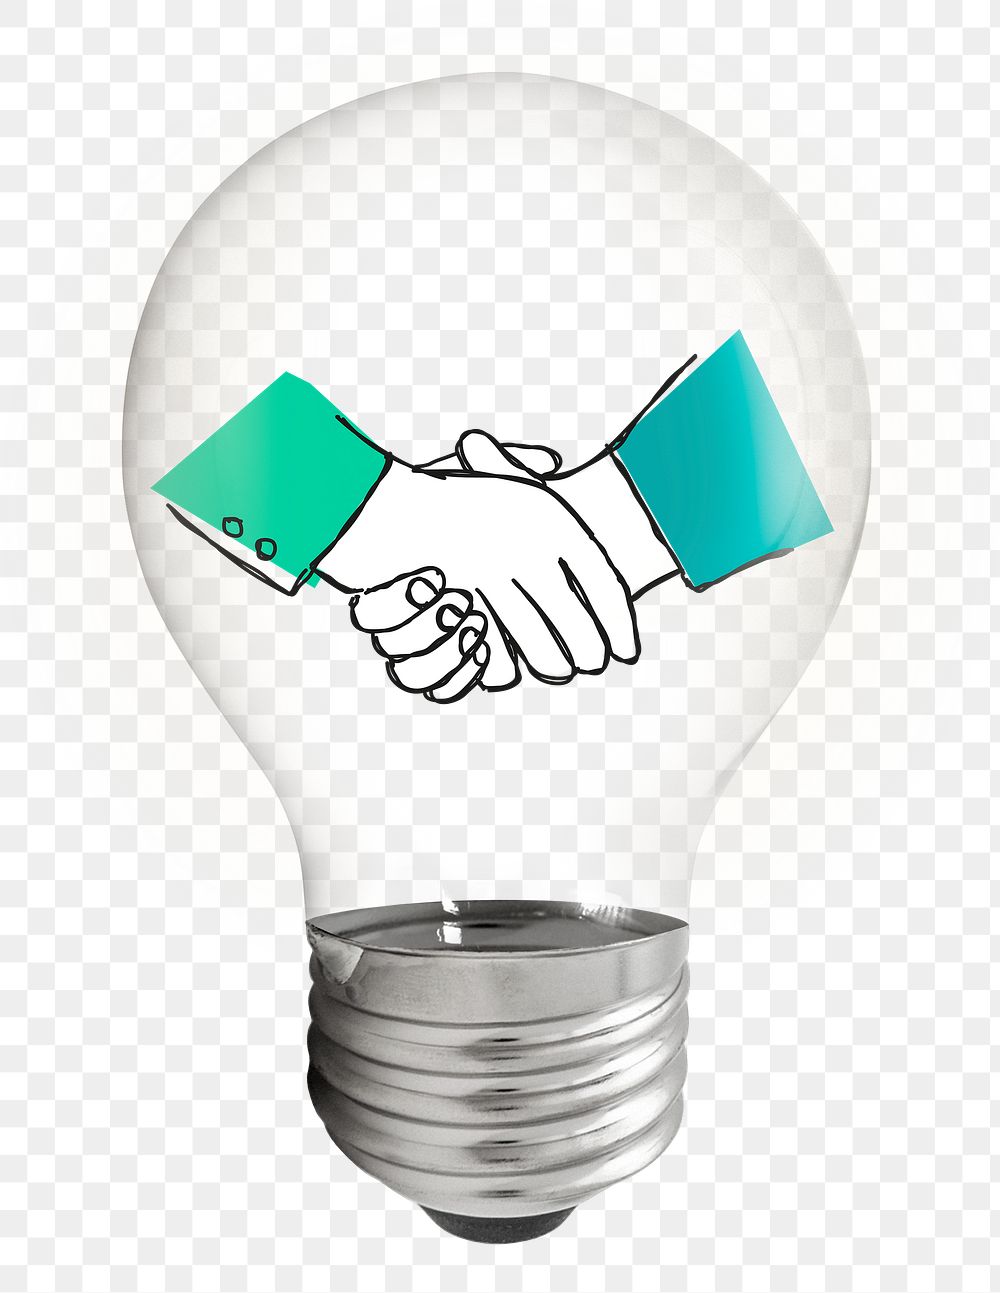 Business handshake  png sticker, light bulb creative doodle illustration on transparent background